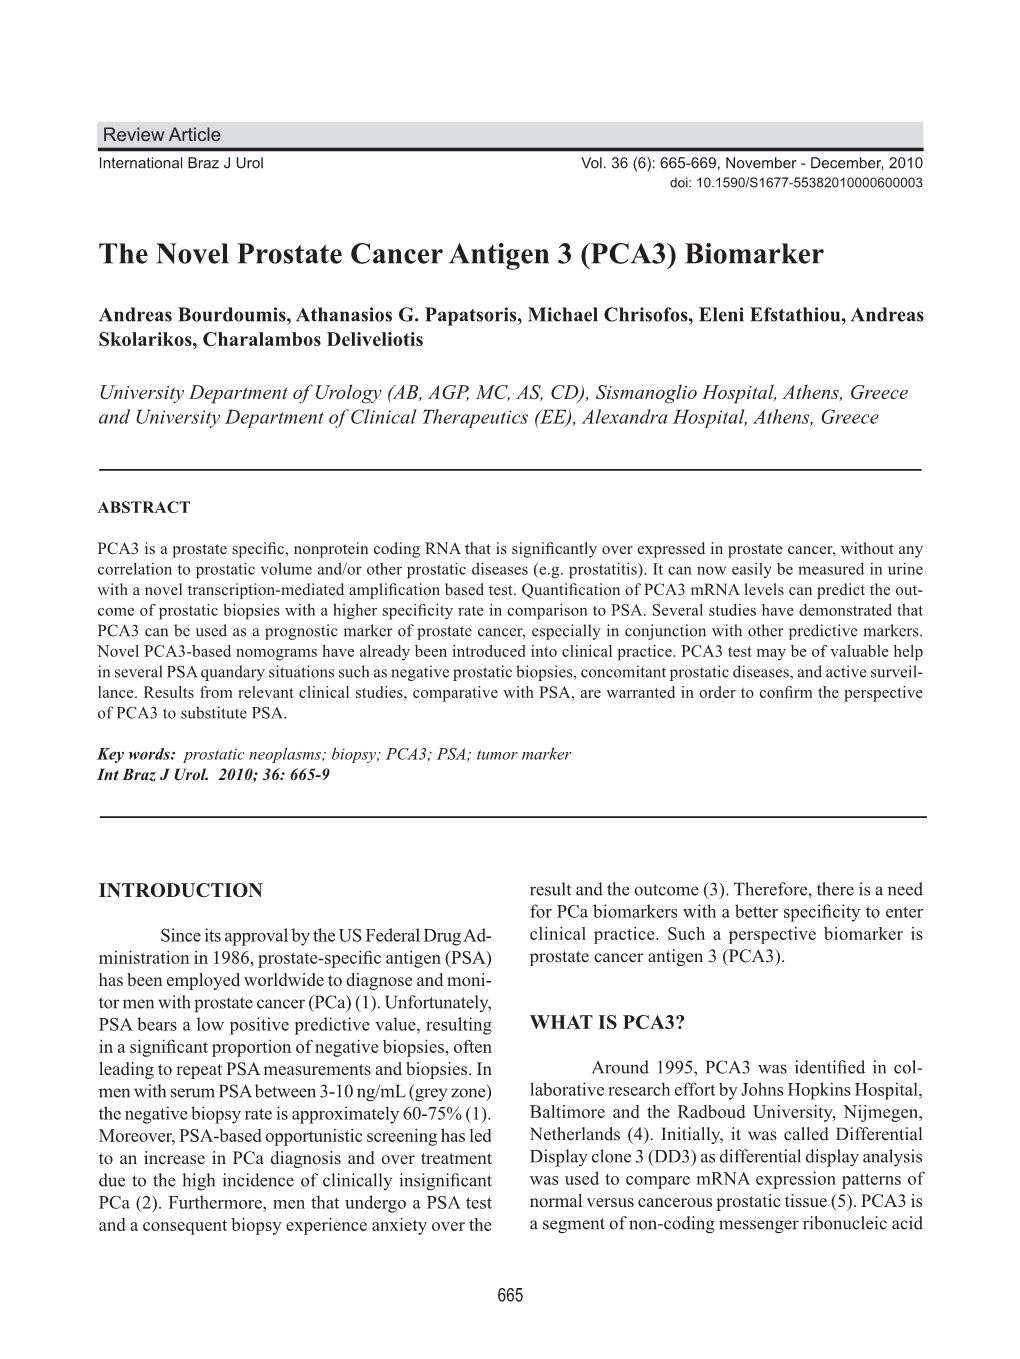 The Novel Prostate Cancer Antigen 3 (PCA3) Biomarker